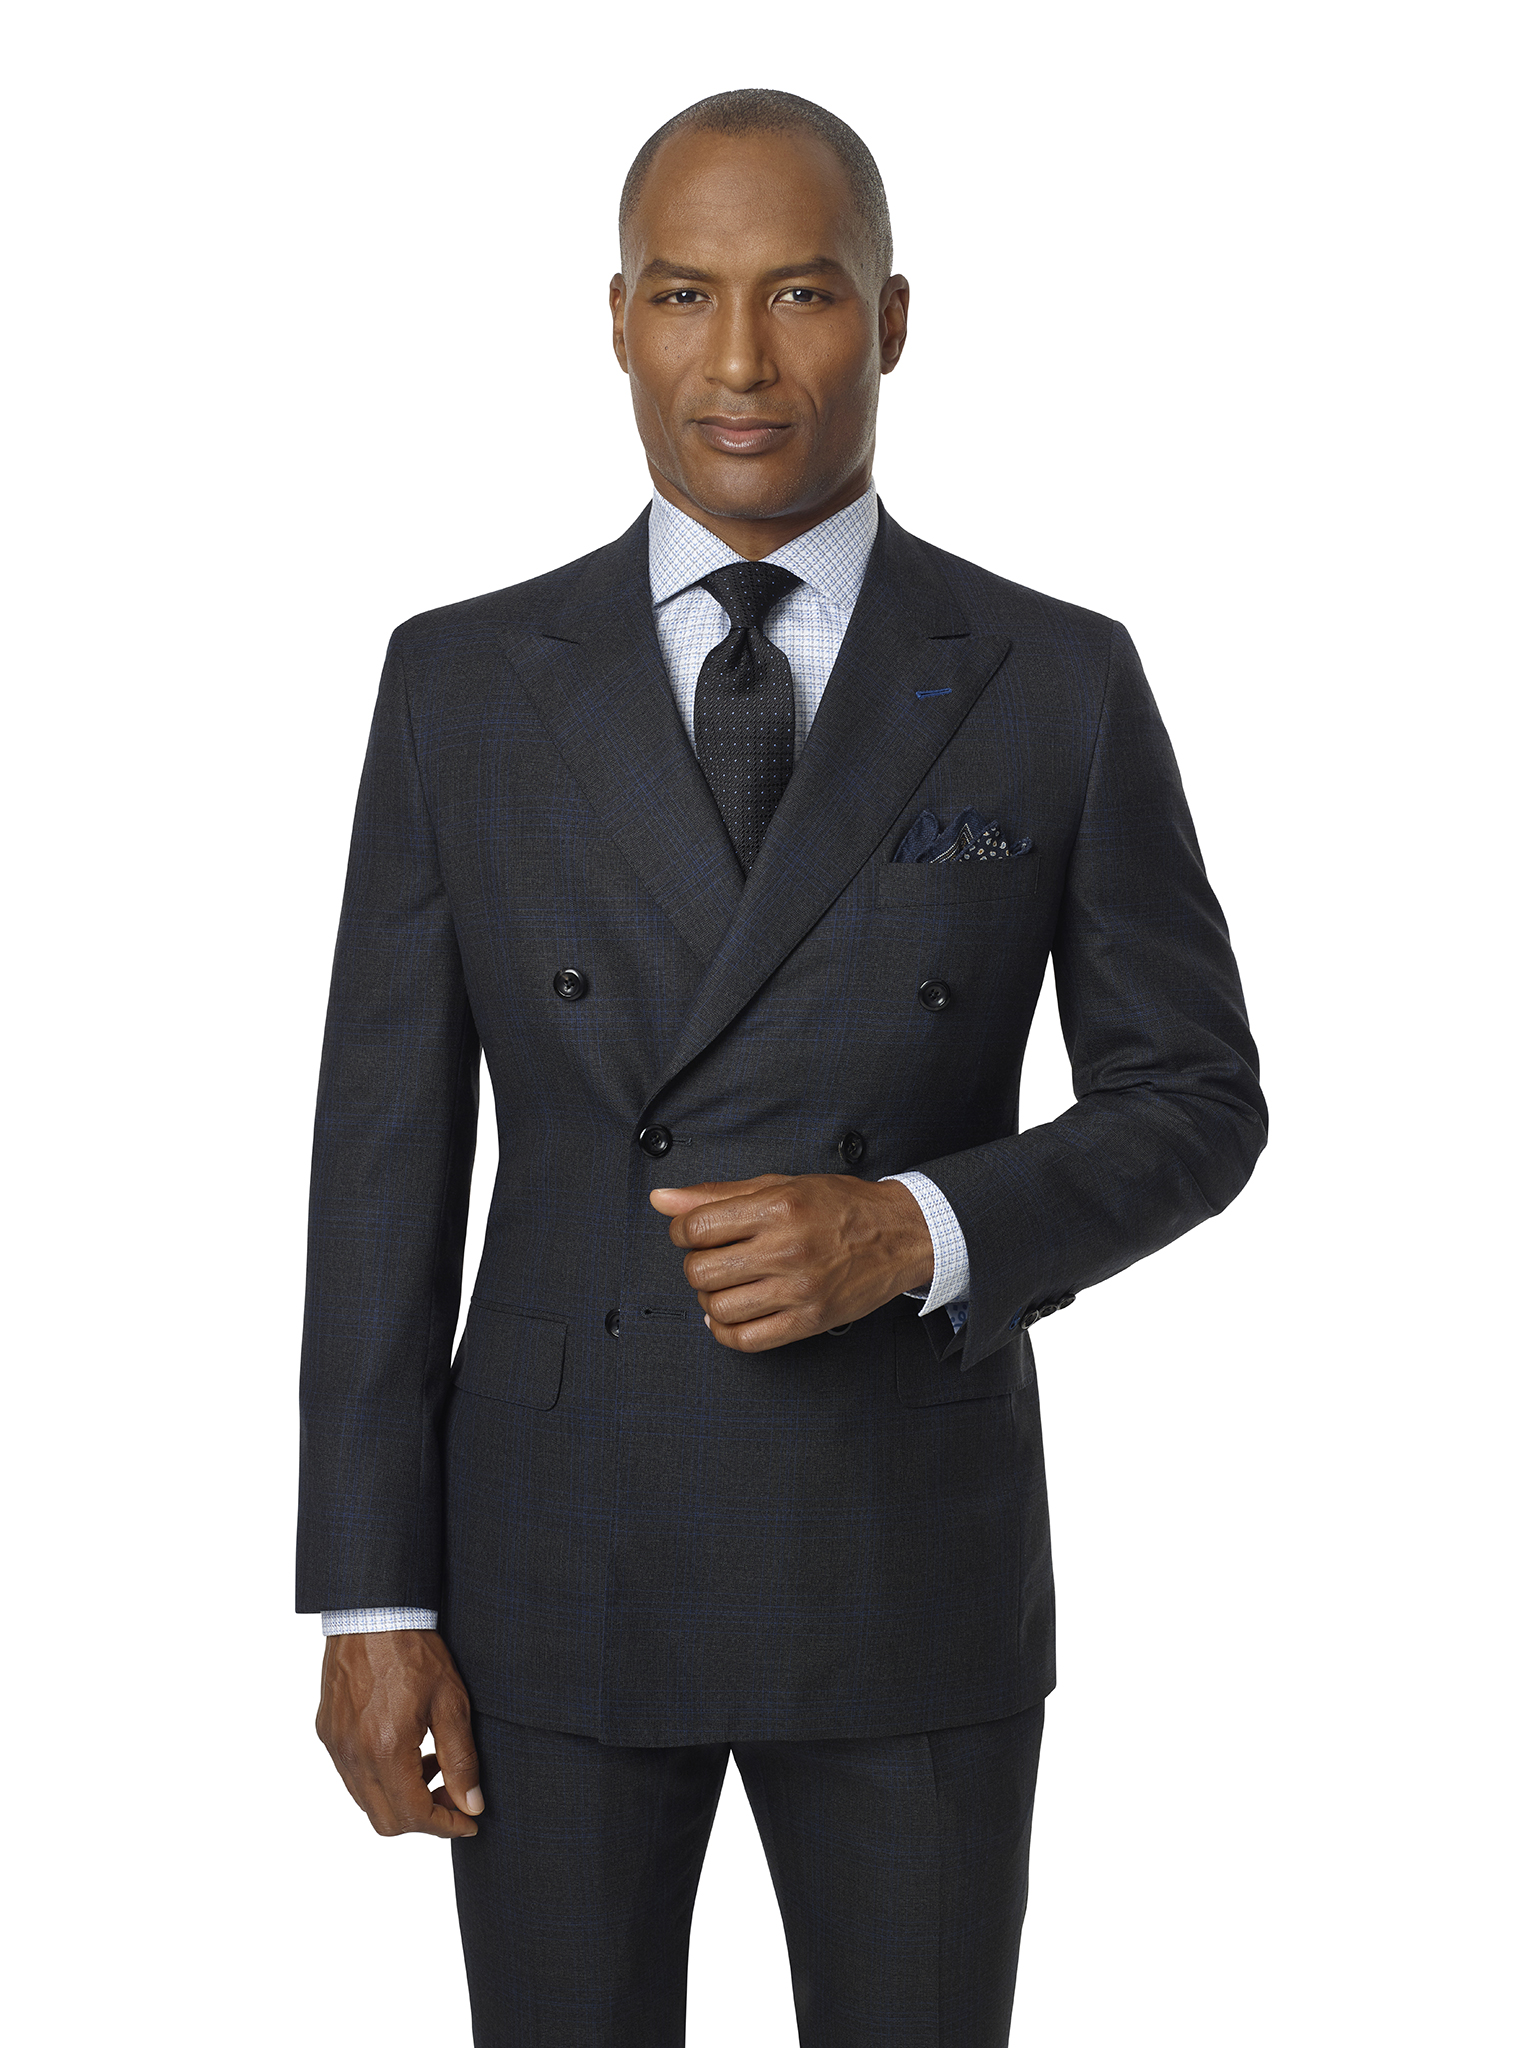 Charcoal & Blue Plaid Suit - Super 140